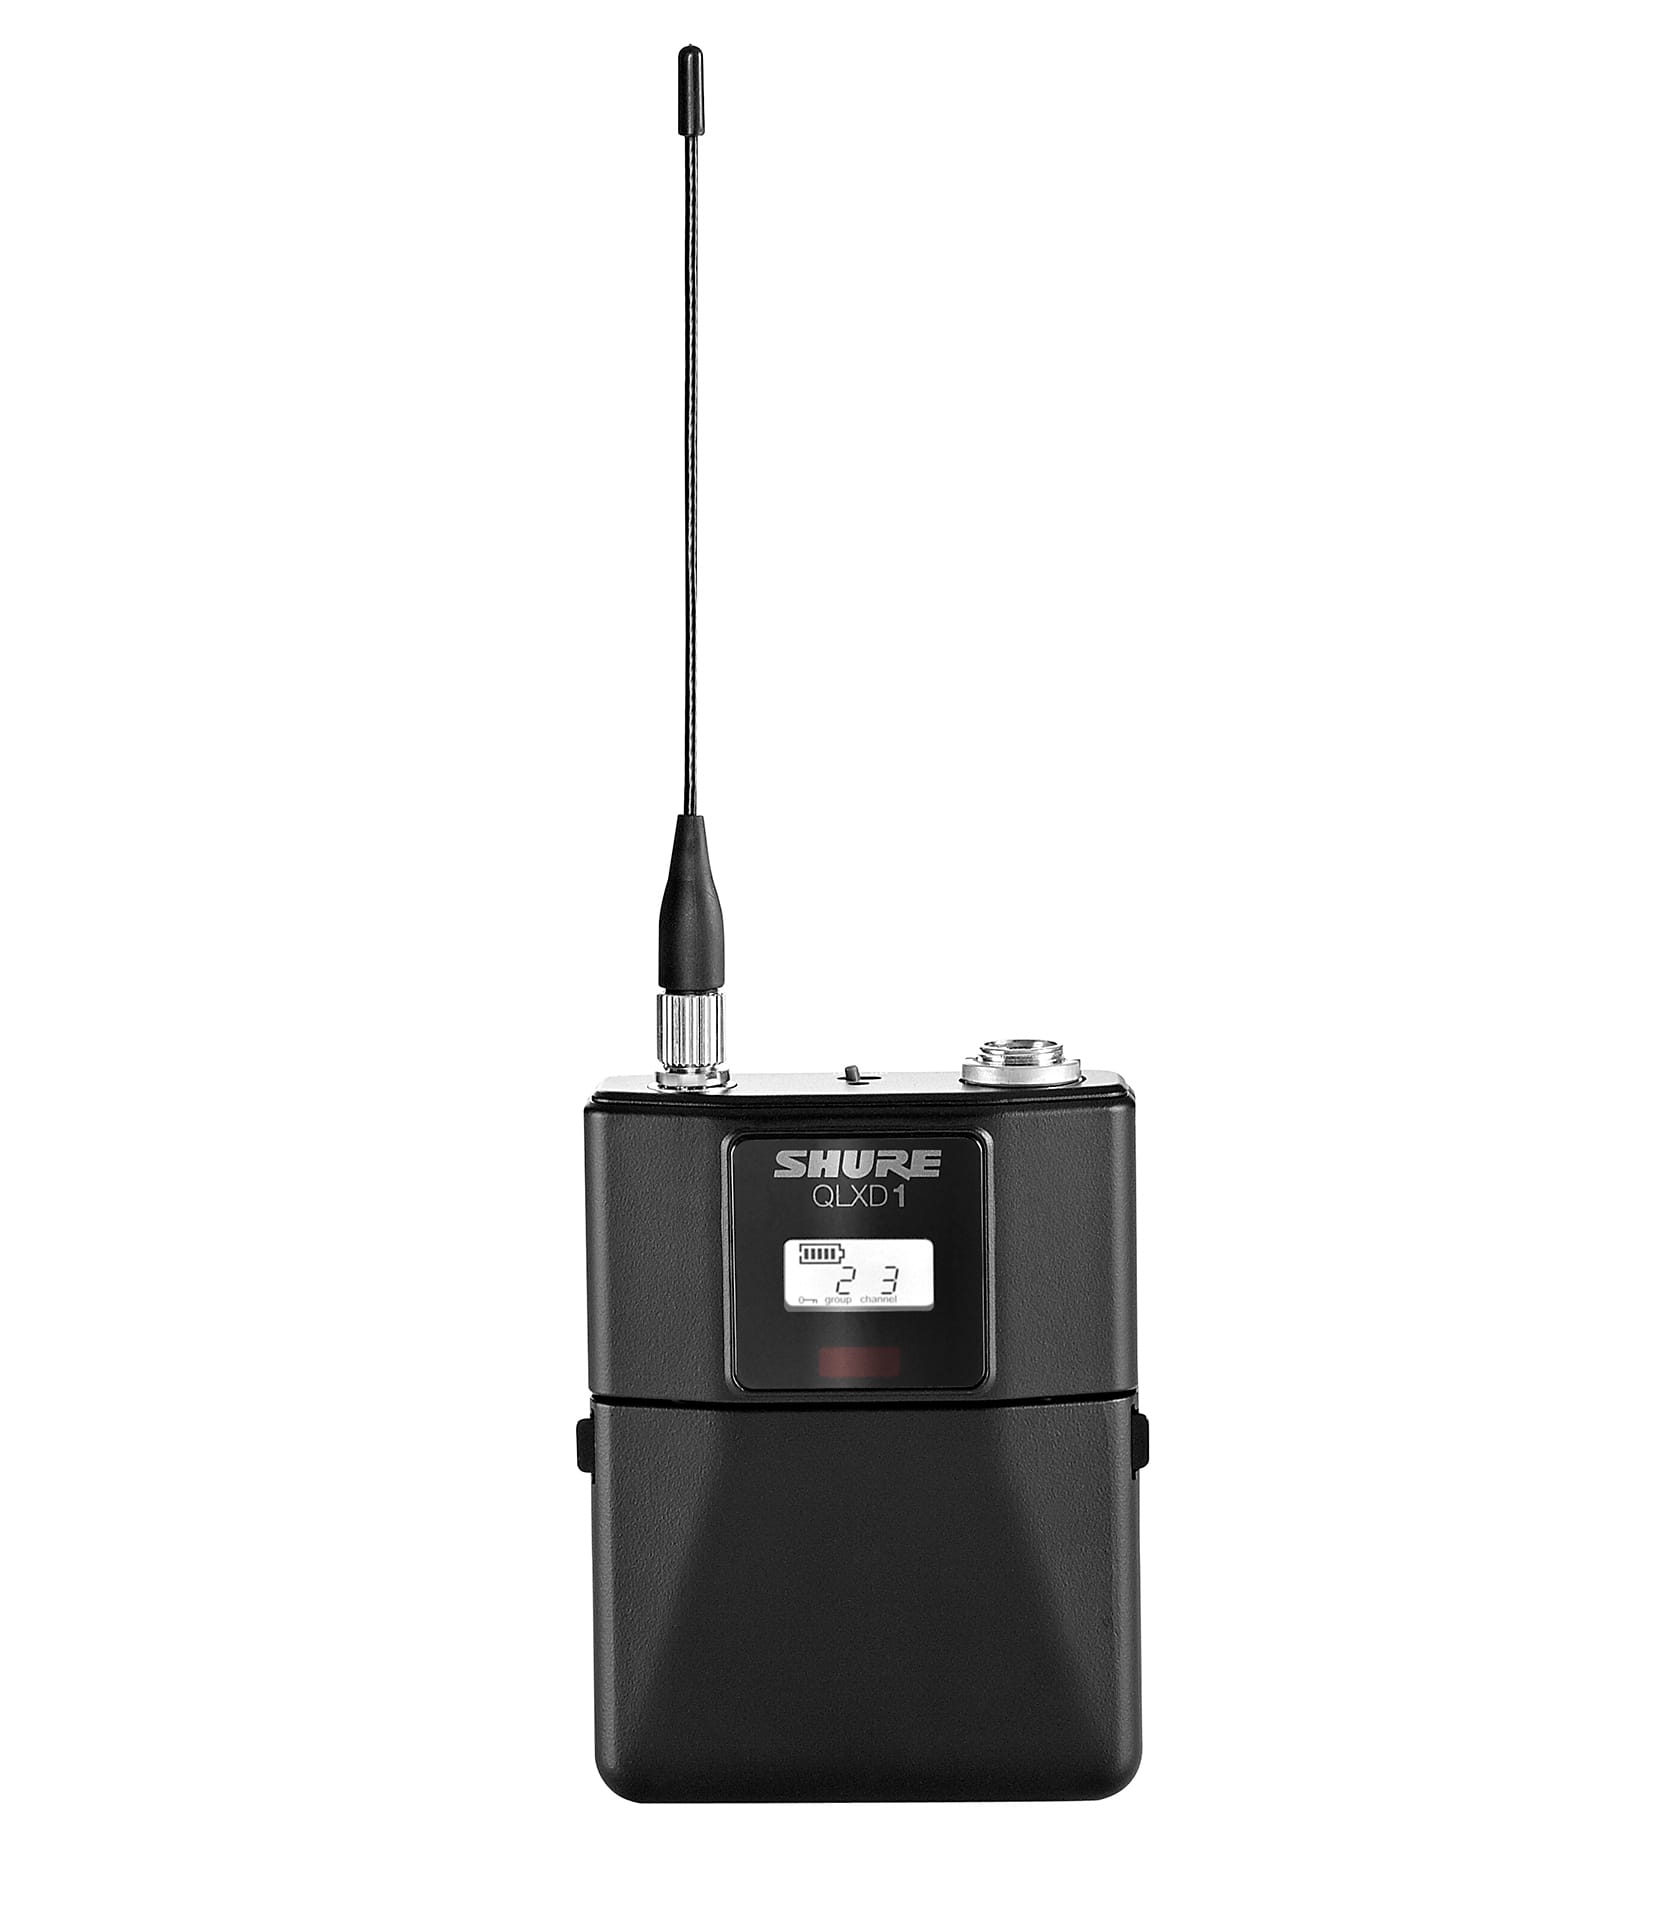 NMK Dubai - Shure - Digital Wireless Bodypack Transmitter